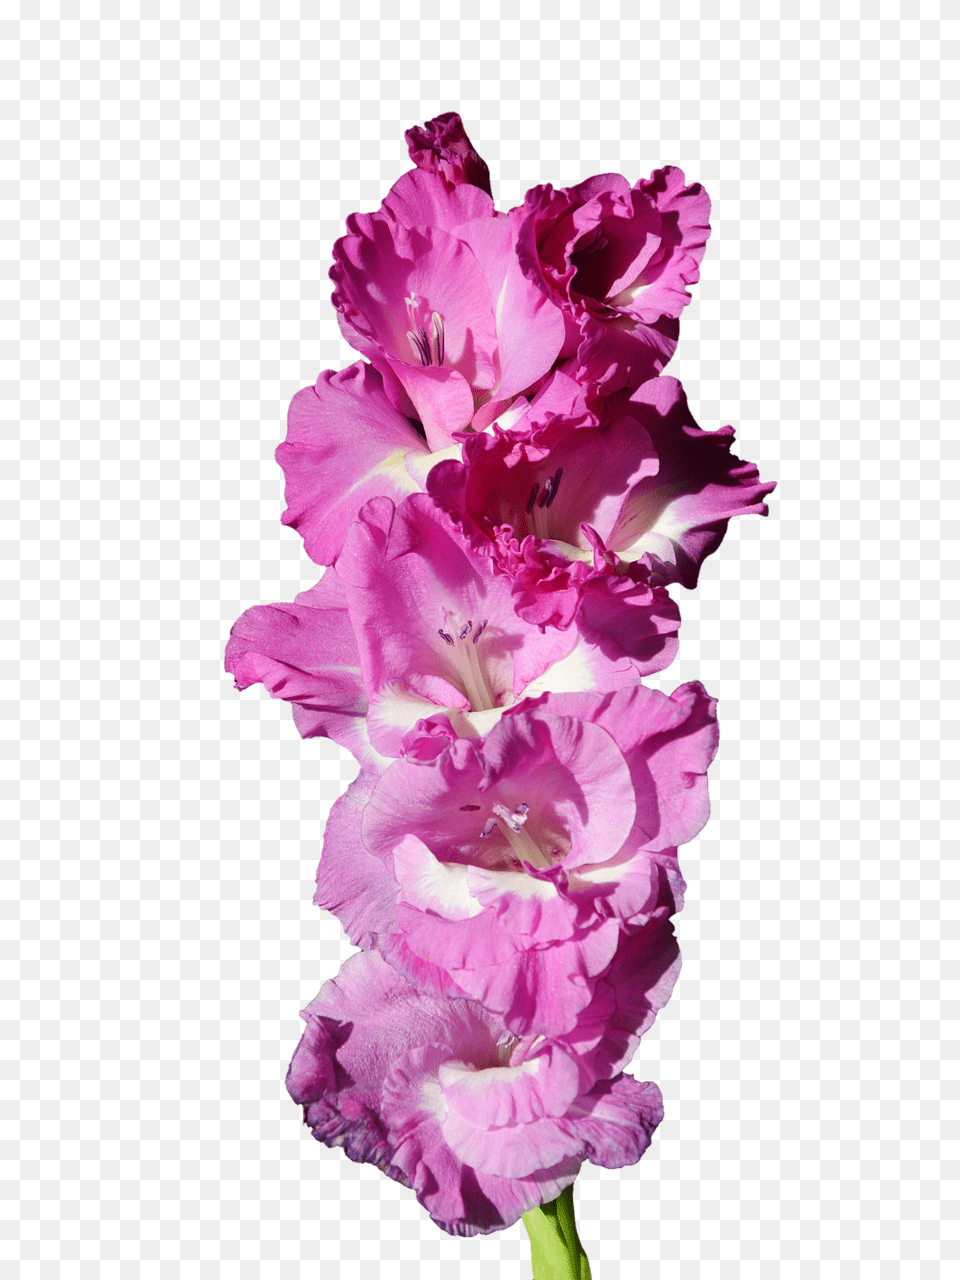 Gladiolus Flower, Plant, Rose Png Image